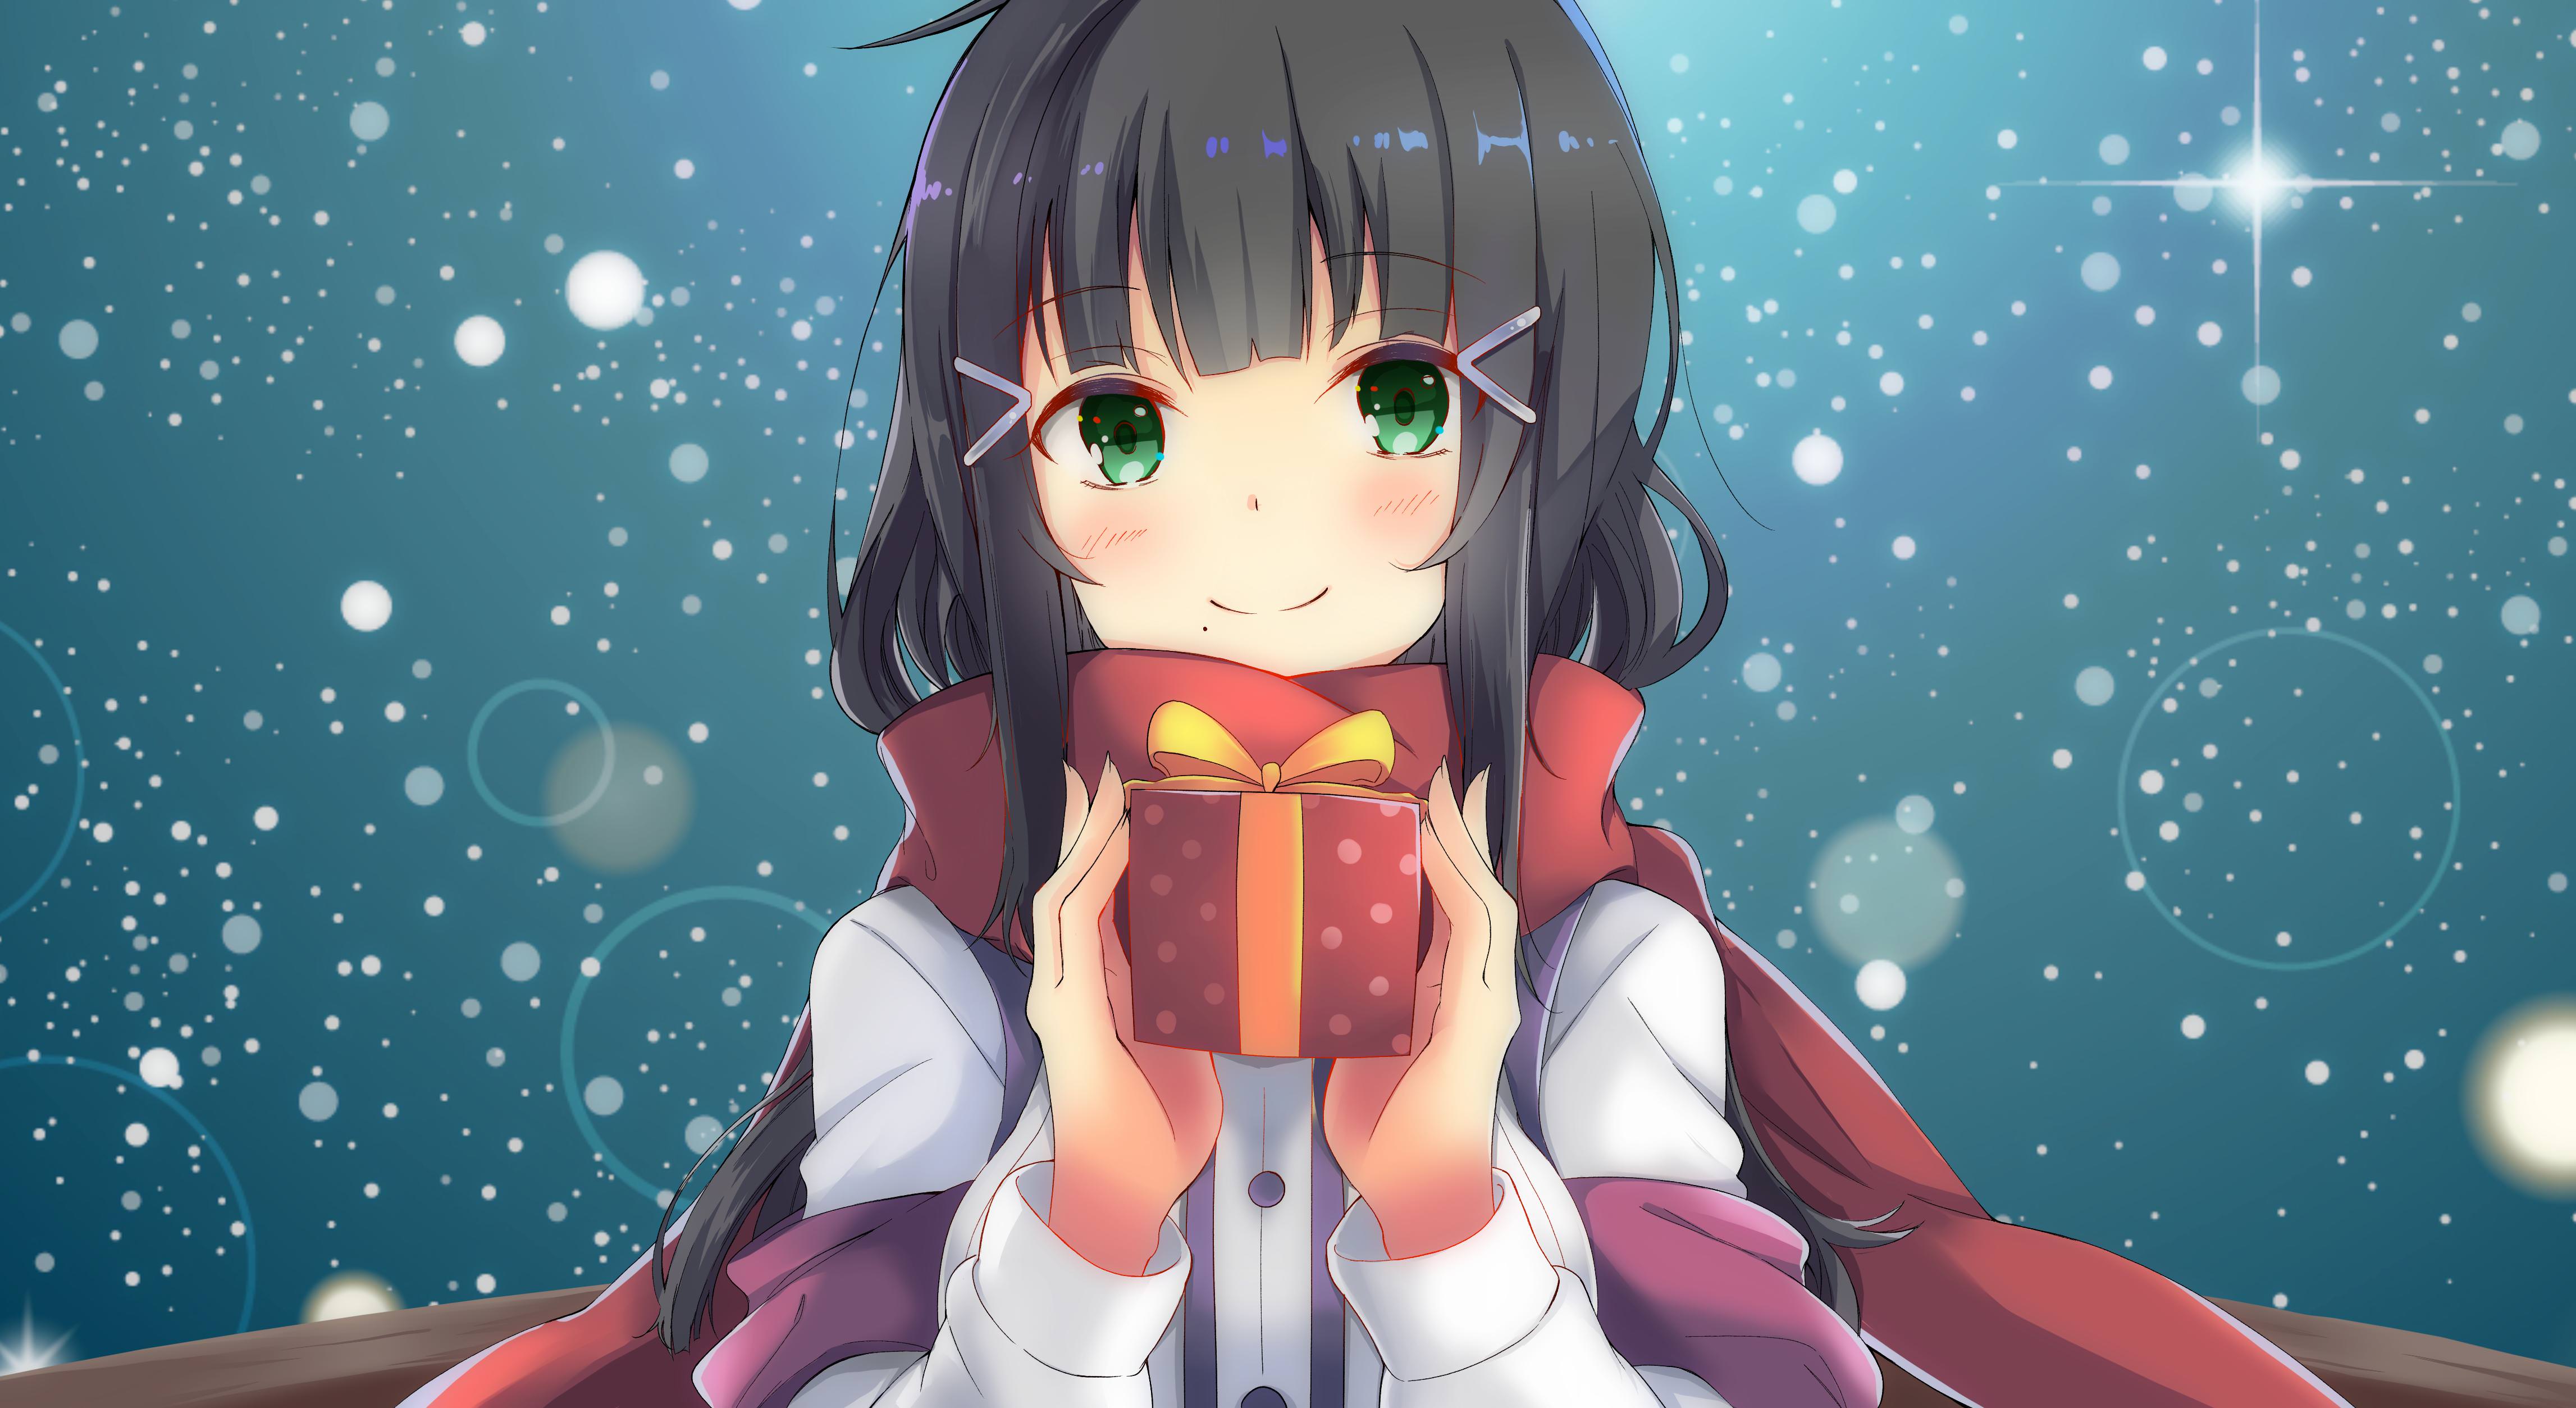 Wallpaper Anime girl, Xmas gift, Winter, HD, 4K, Anime